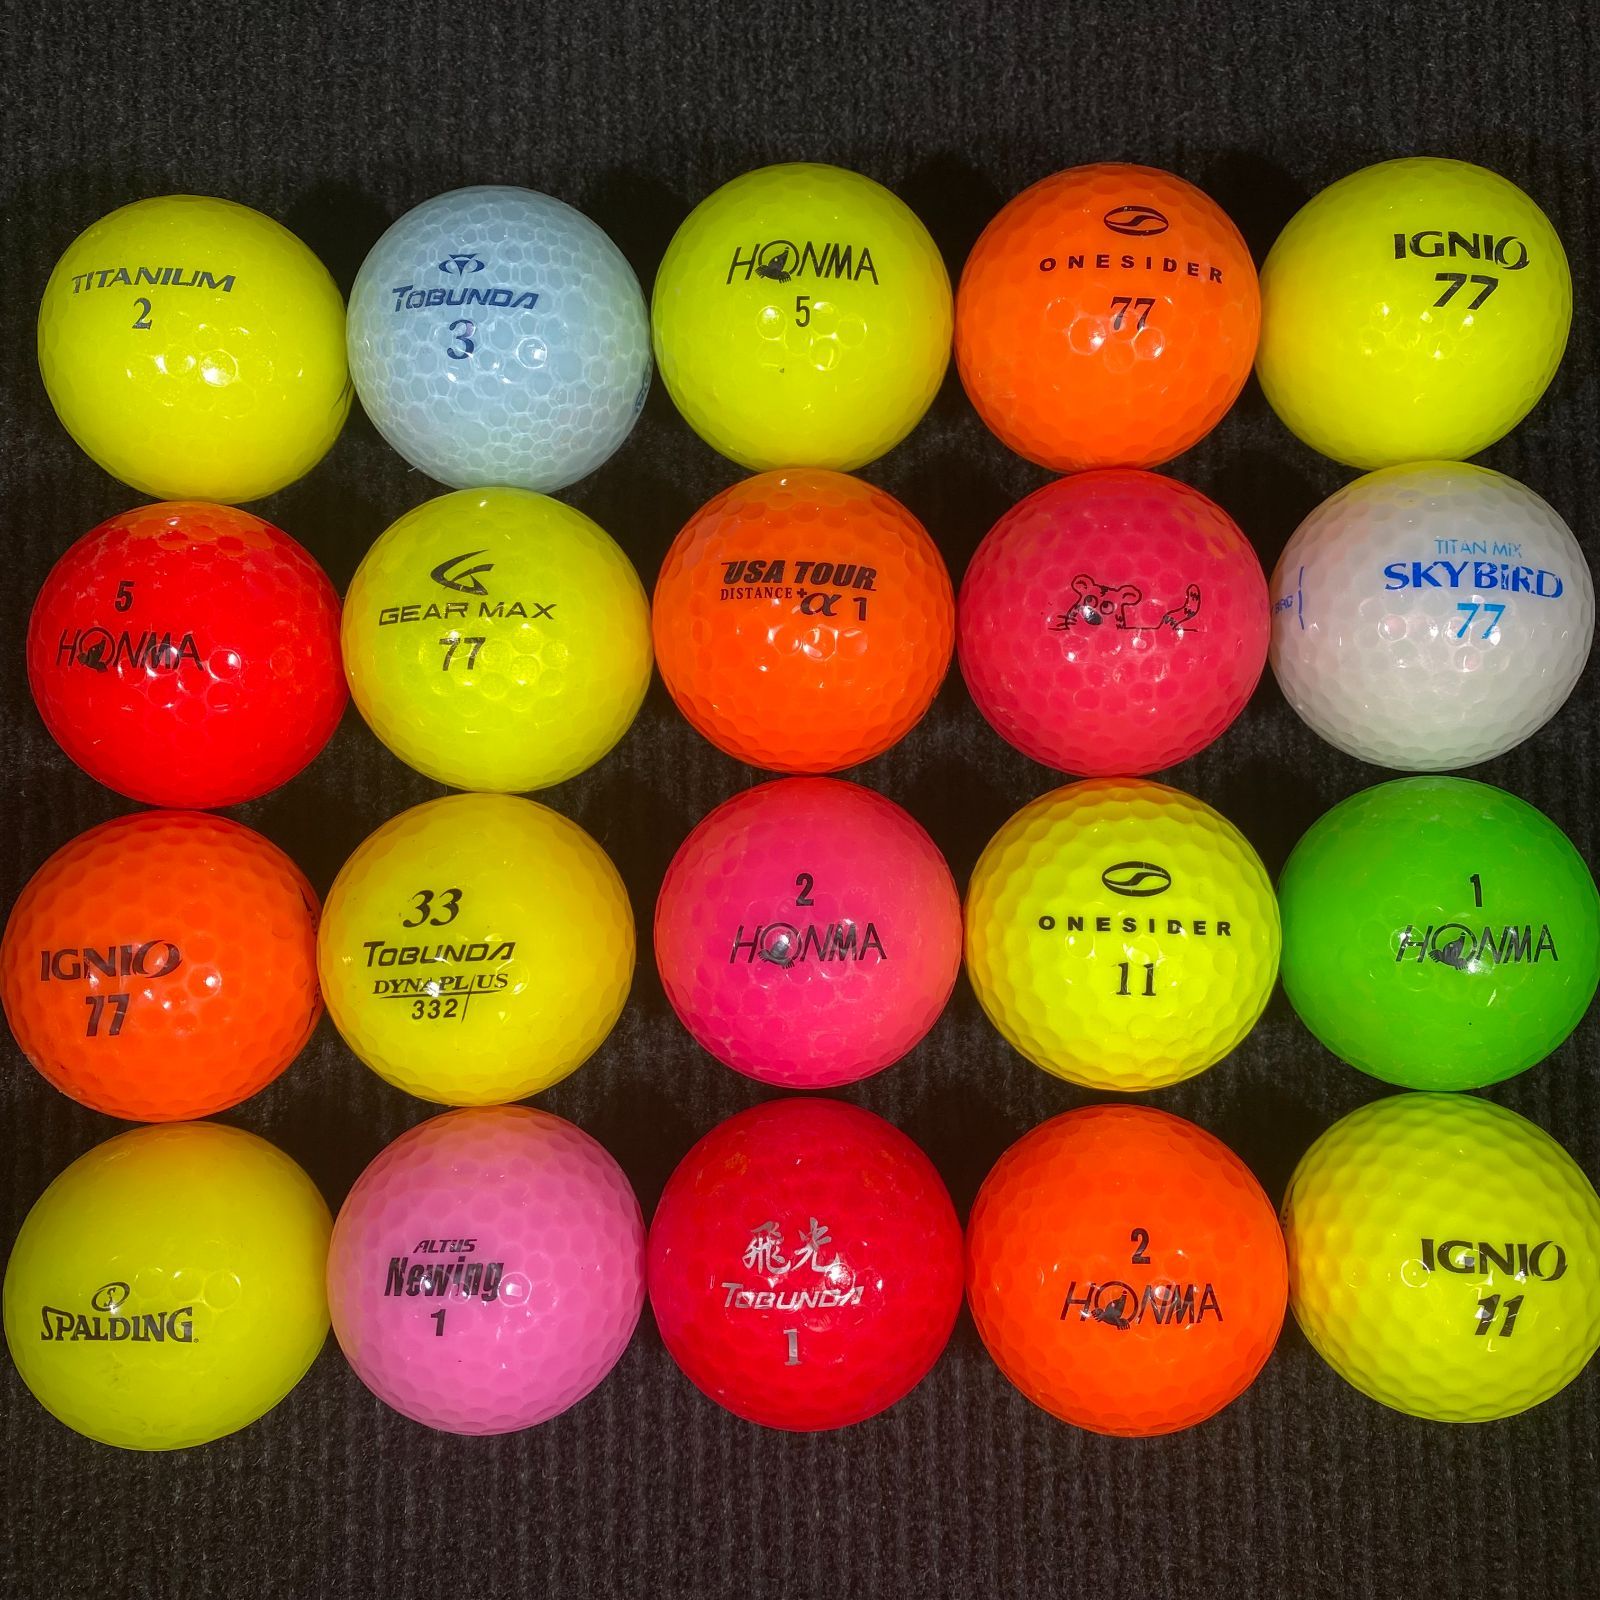 ロストボール カラーボール 20球セット ゴルフボール【美品】 - メルカリ